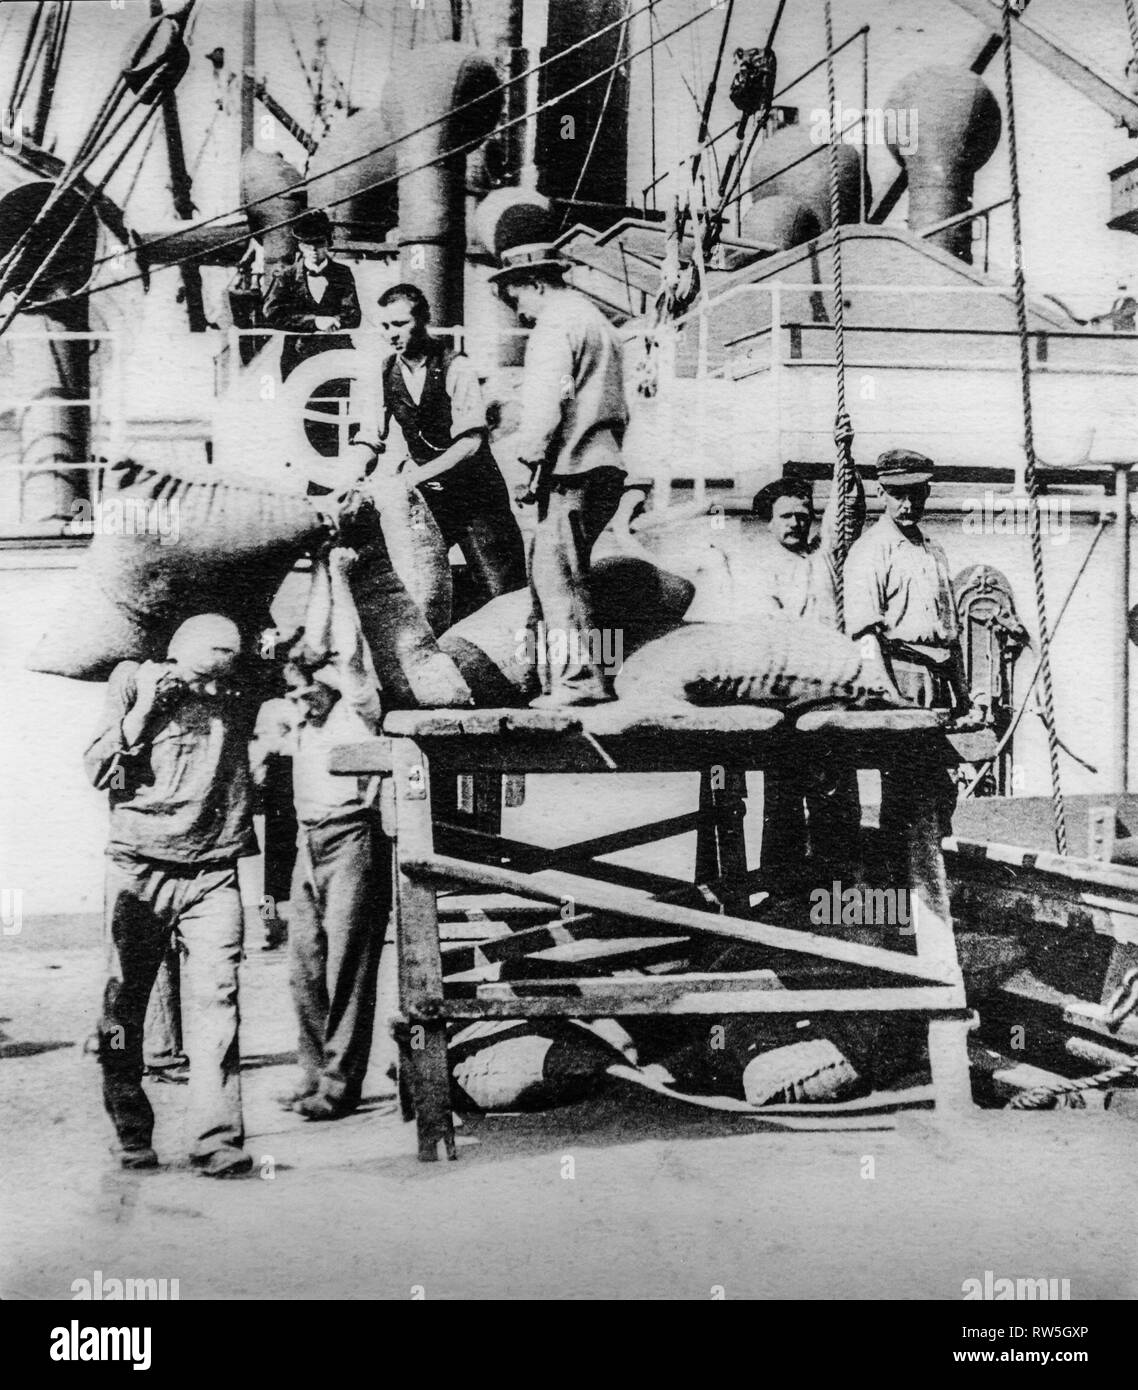 Old early 1900s photo of stevedores / dockers / longshoremen / dockworkers unloading steamship in the port of Antwerp, Flanders, Belgium Stock Photo